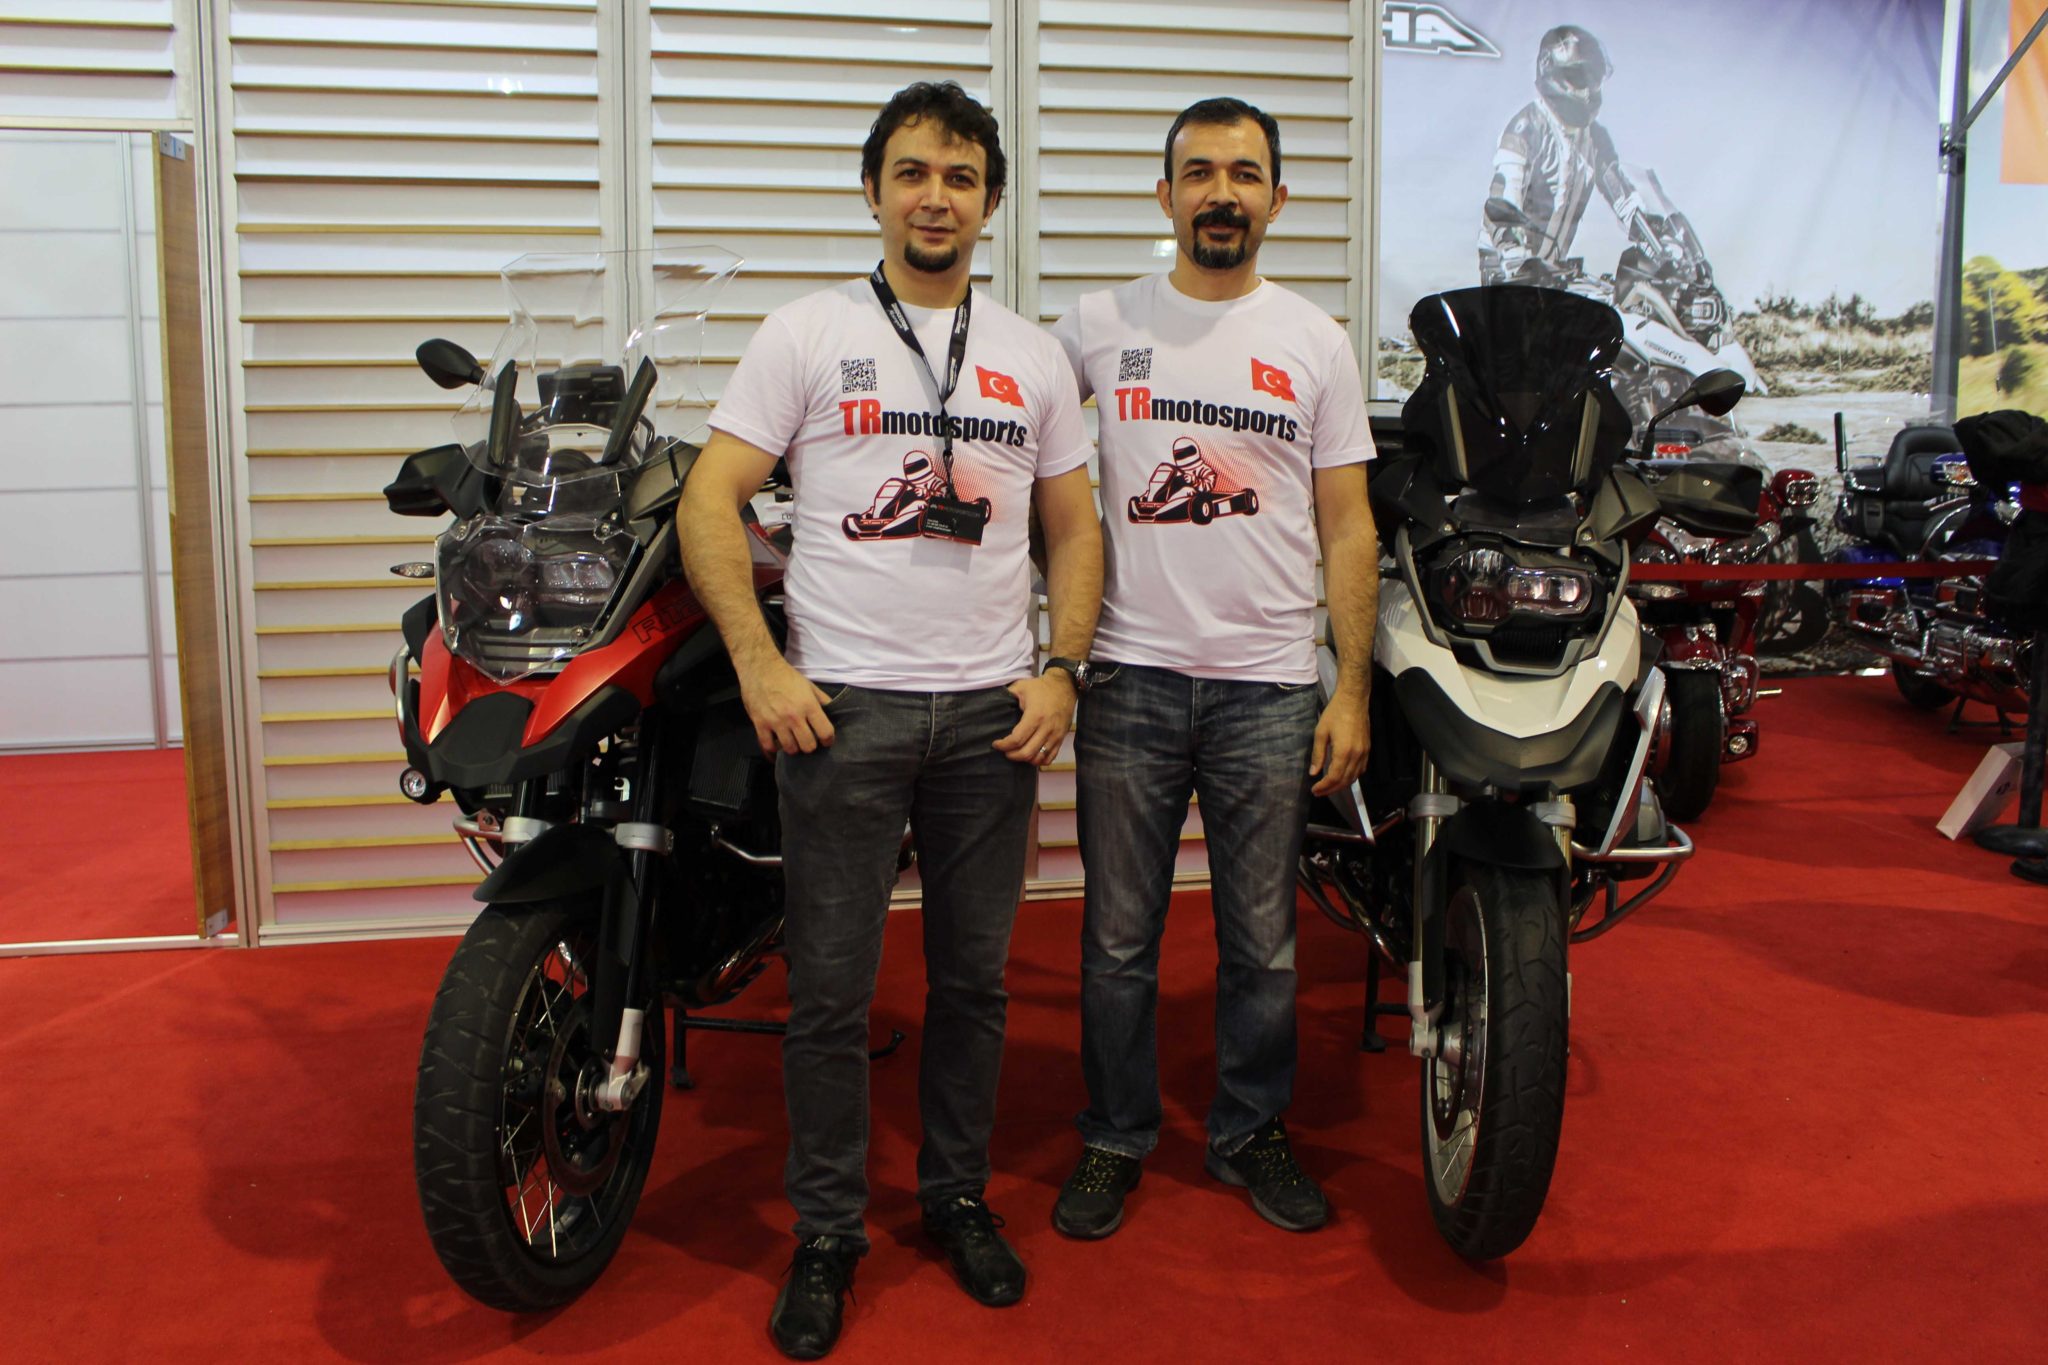 2016 Eurasia MOTO BIKE Expo - TRmotosports Motosiklet Fuarında